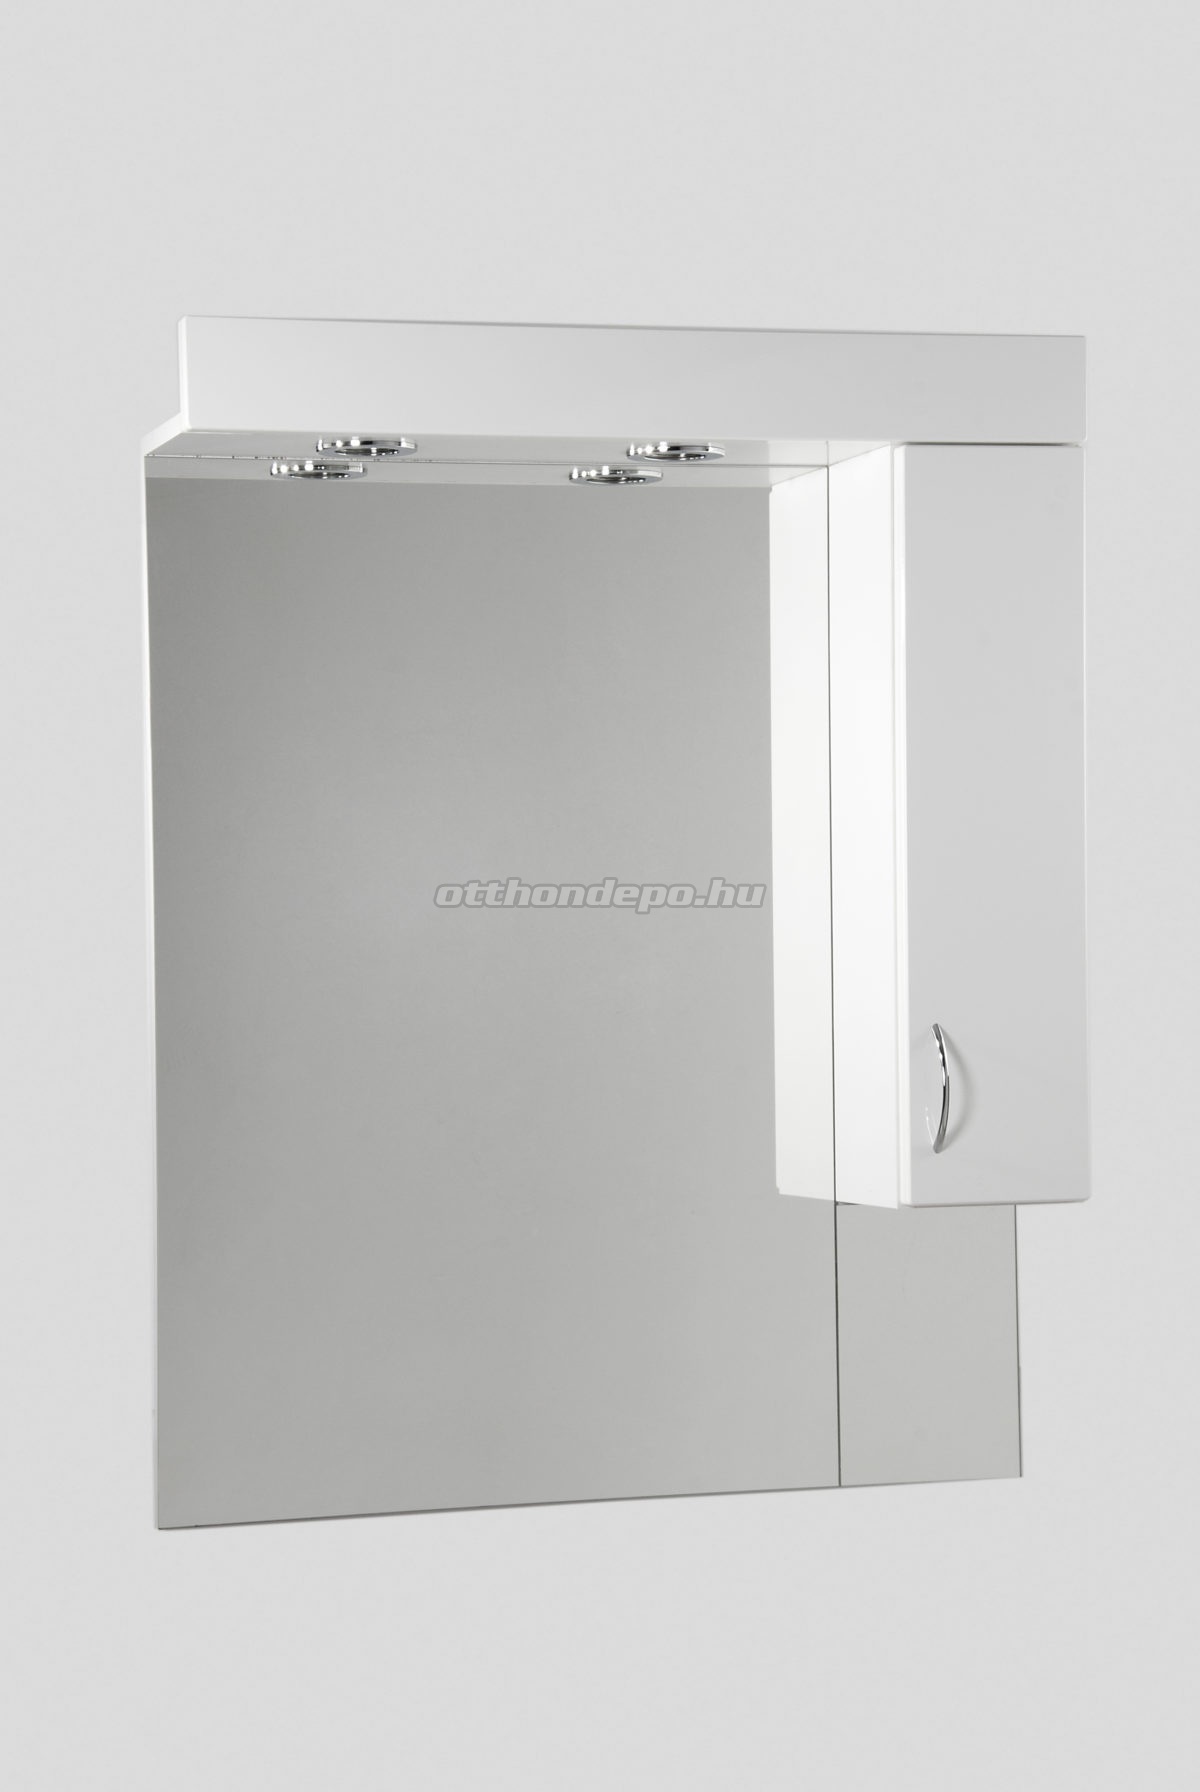 HB Fürdőszobabútor, Standard 85SZ tükrös felső szekrény, 85 cm